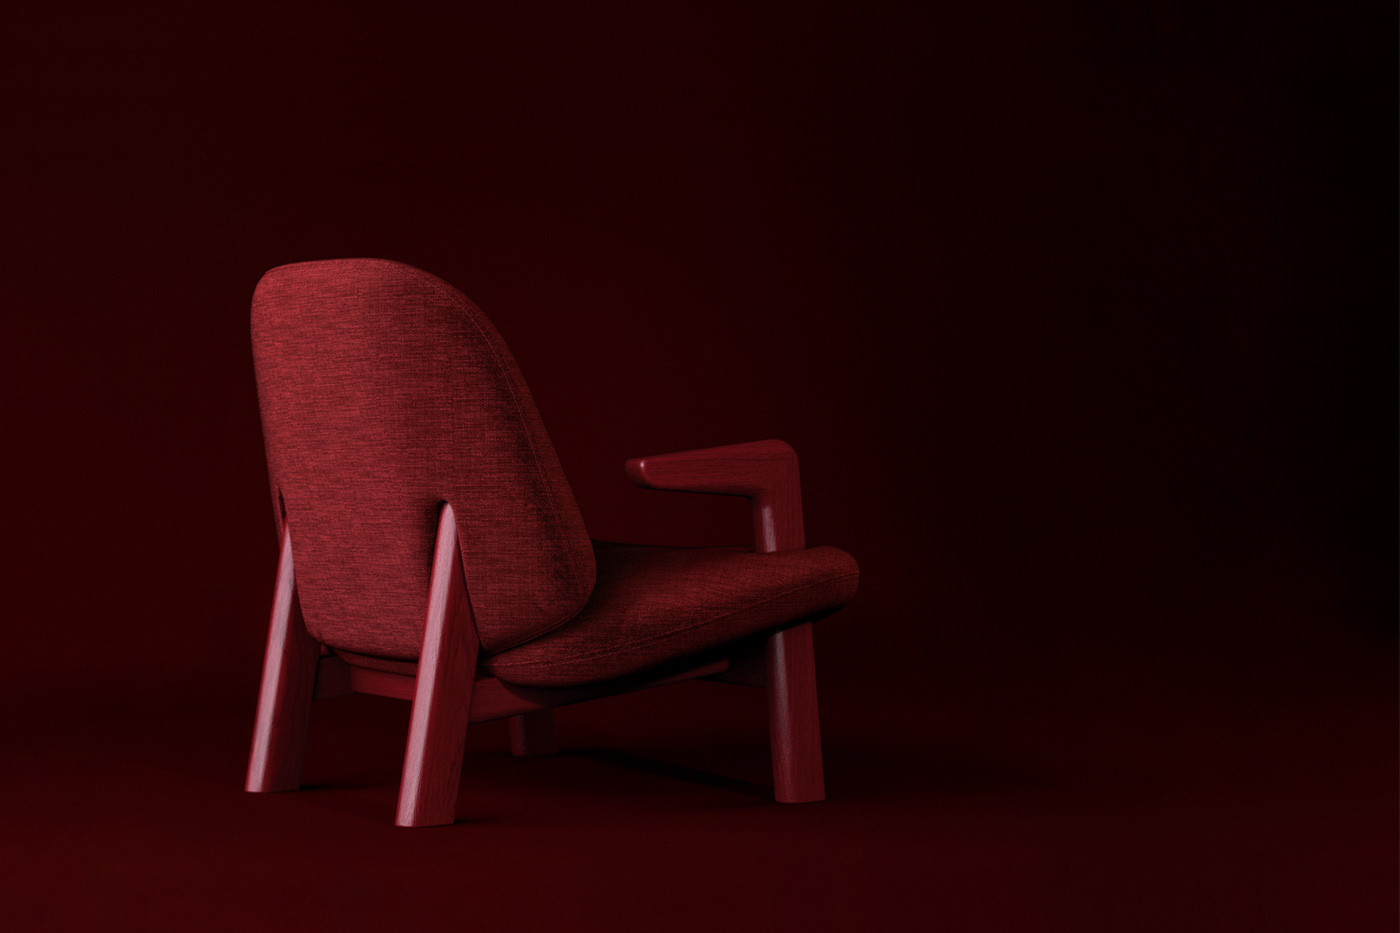 furniture product design  industrial product design armchair design juamstudio